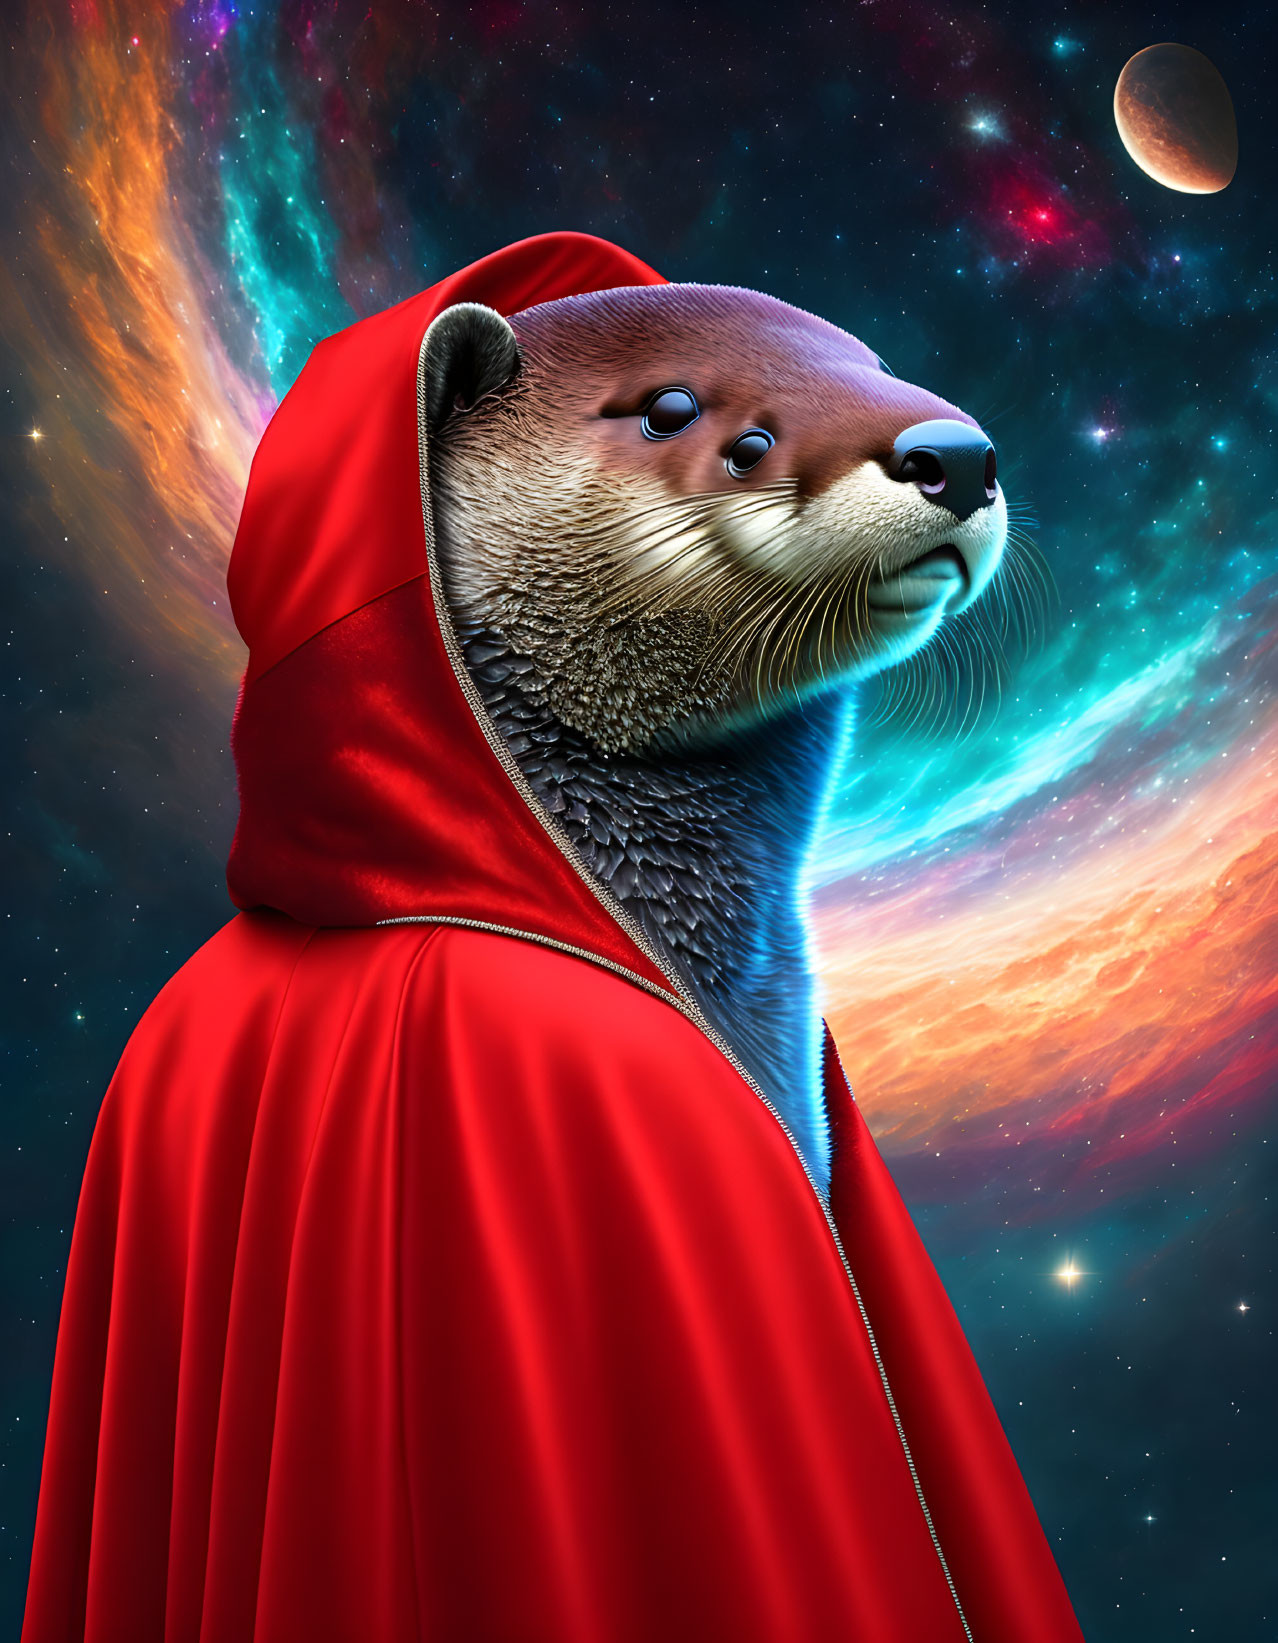 Otter in red cloak